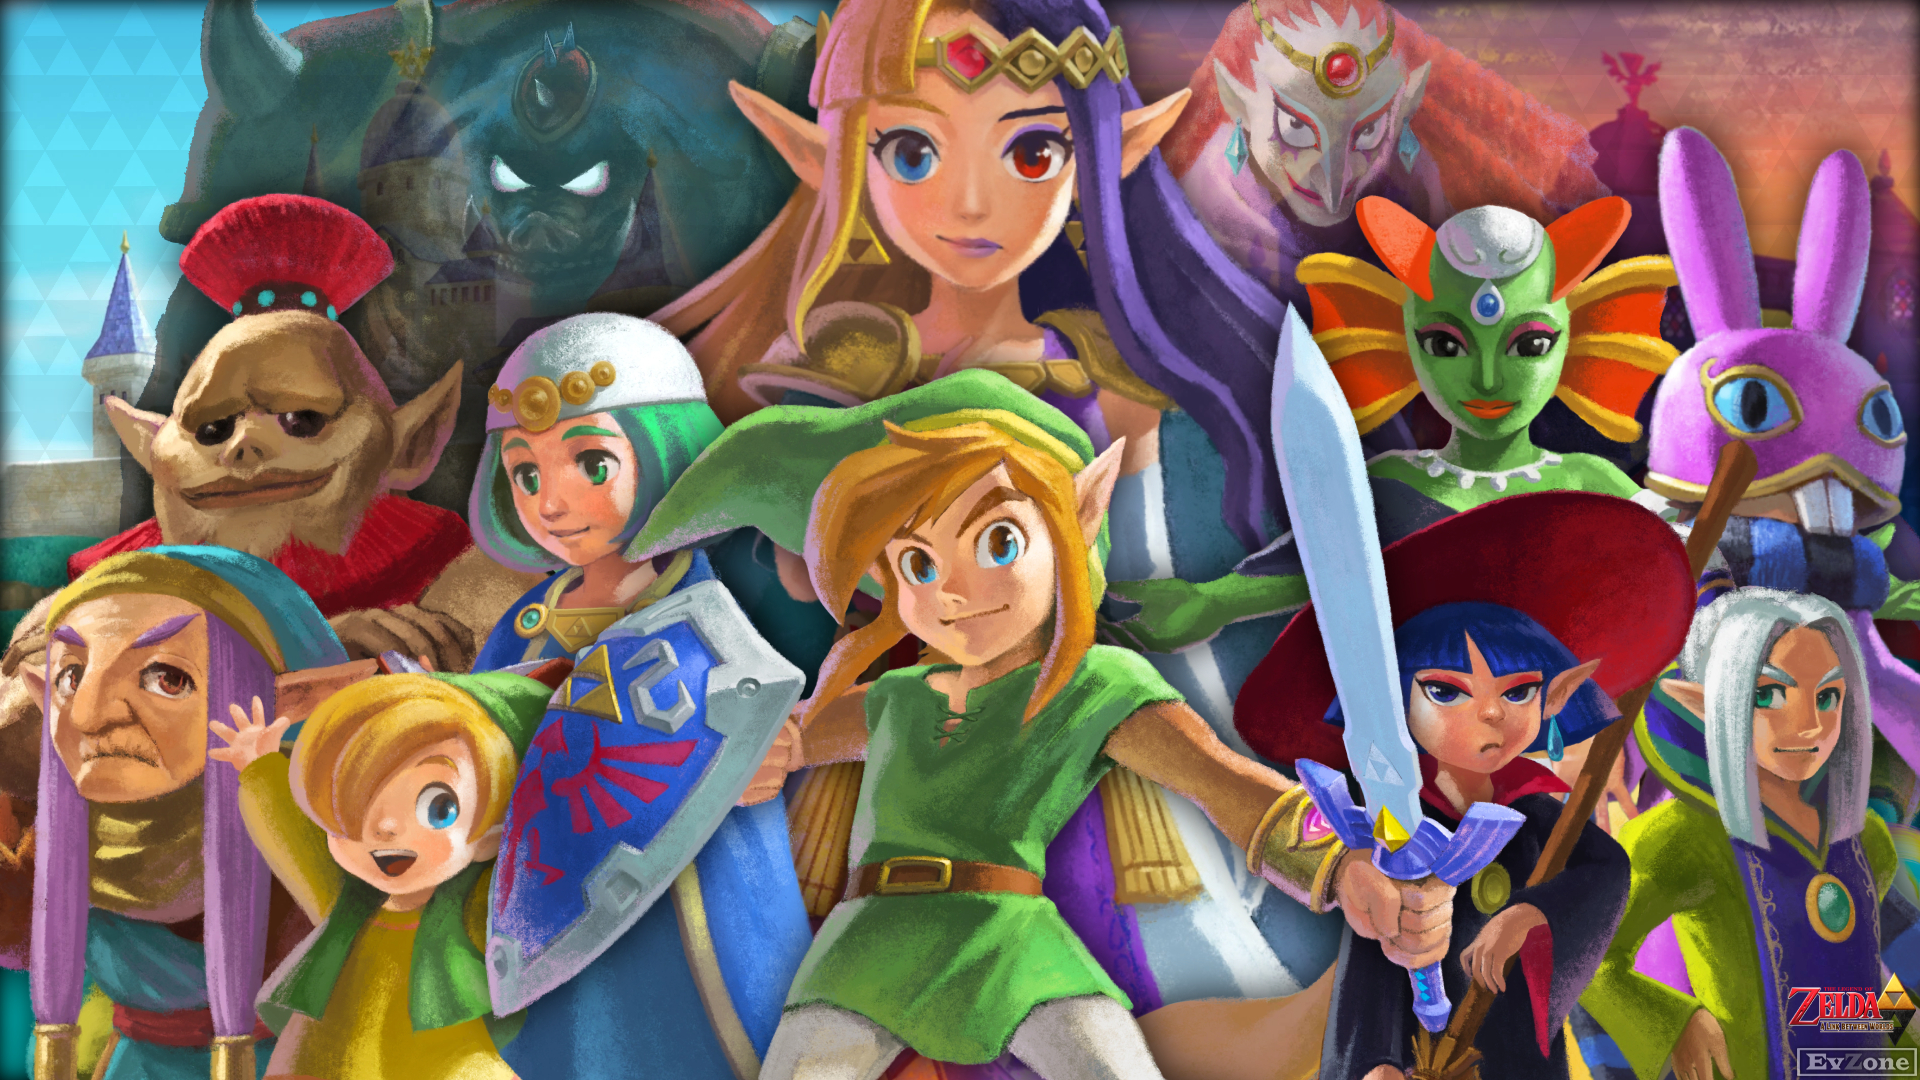 The Legend Of Zelda: A Link Between Worlds Wallpapers - Wallpaper Cave